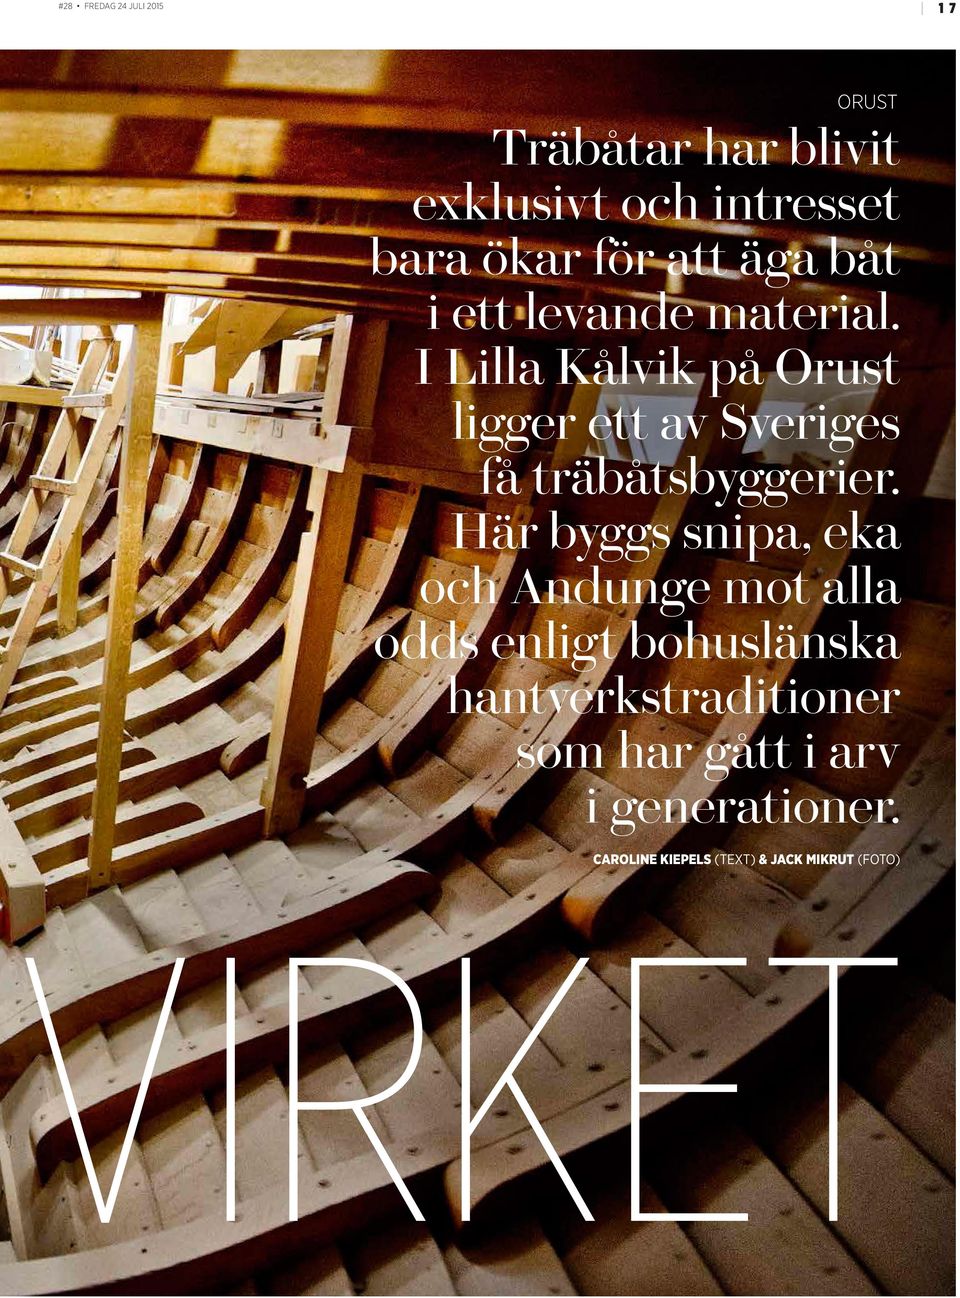 I Lilla Kålvik på Orust ligger ett av Sveriges få träbåtsbyggerier.